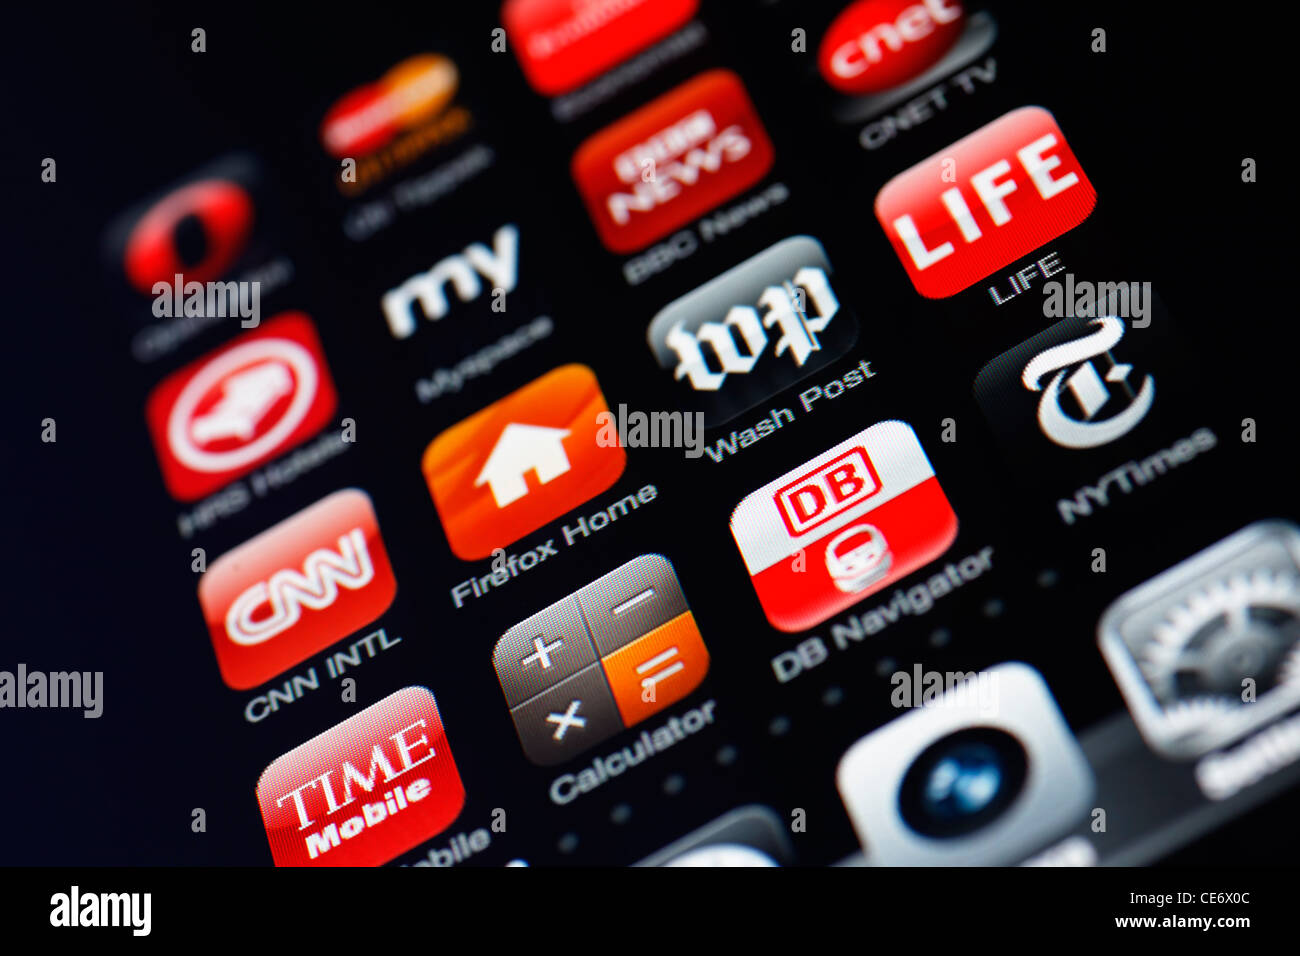 Münster, 26. Januar 2012: Bild des Iphone-Touchscreens. Display zeigt eine Sammlung von nützlichen apps mit roter Farbe Stockfoto